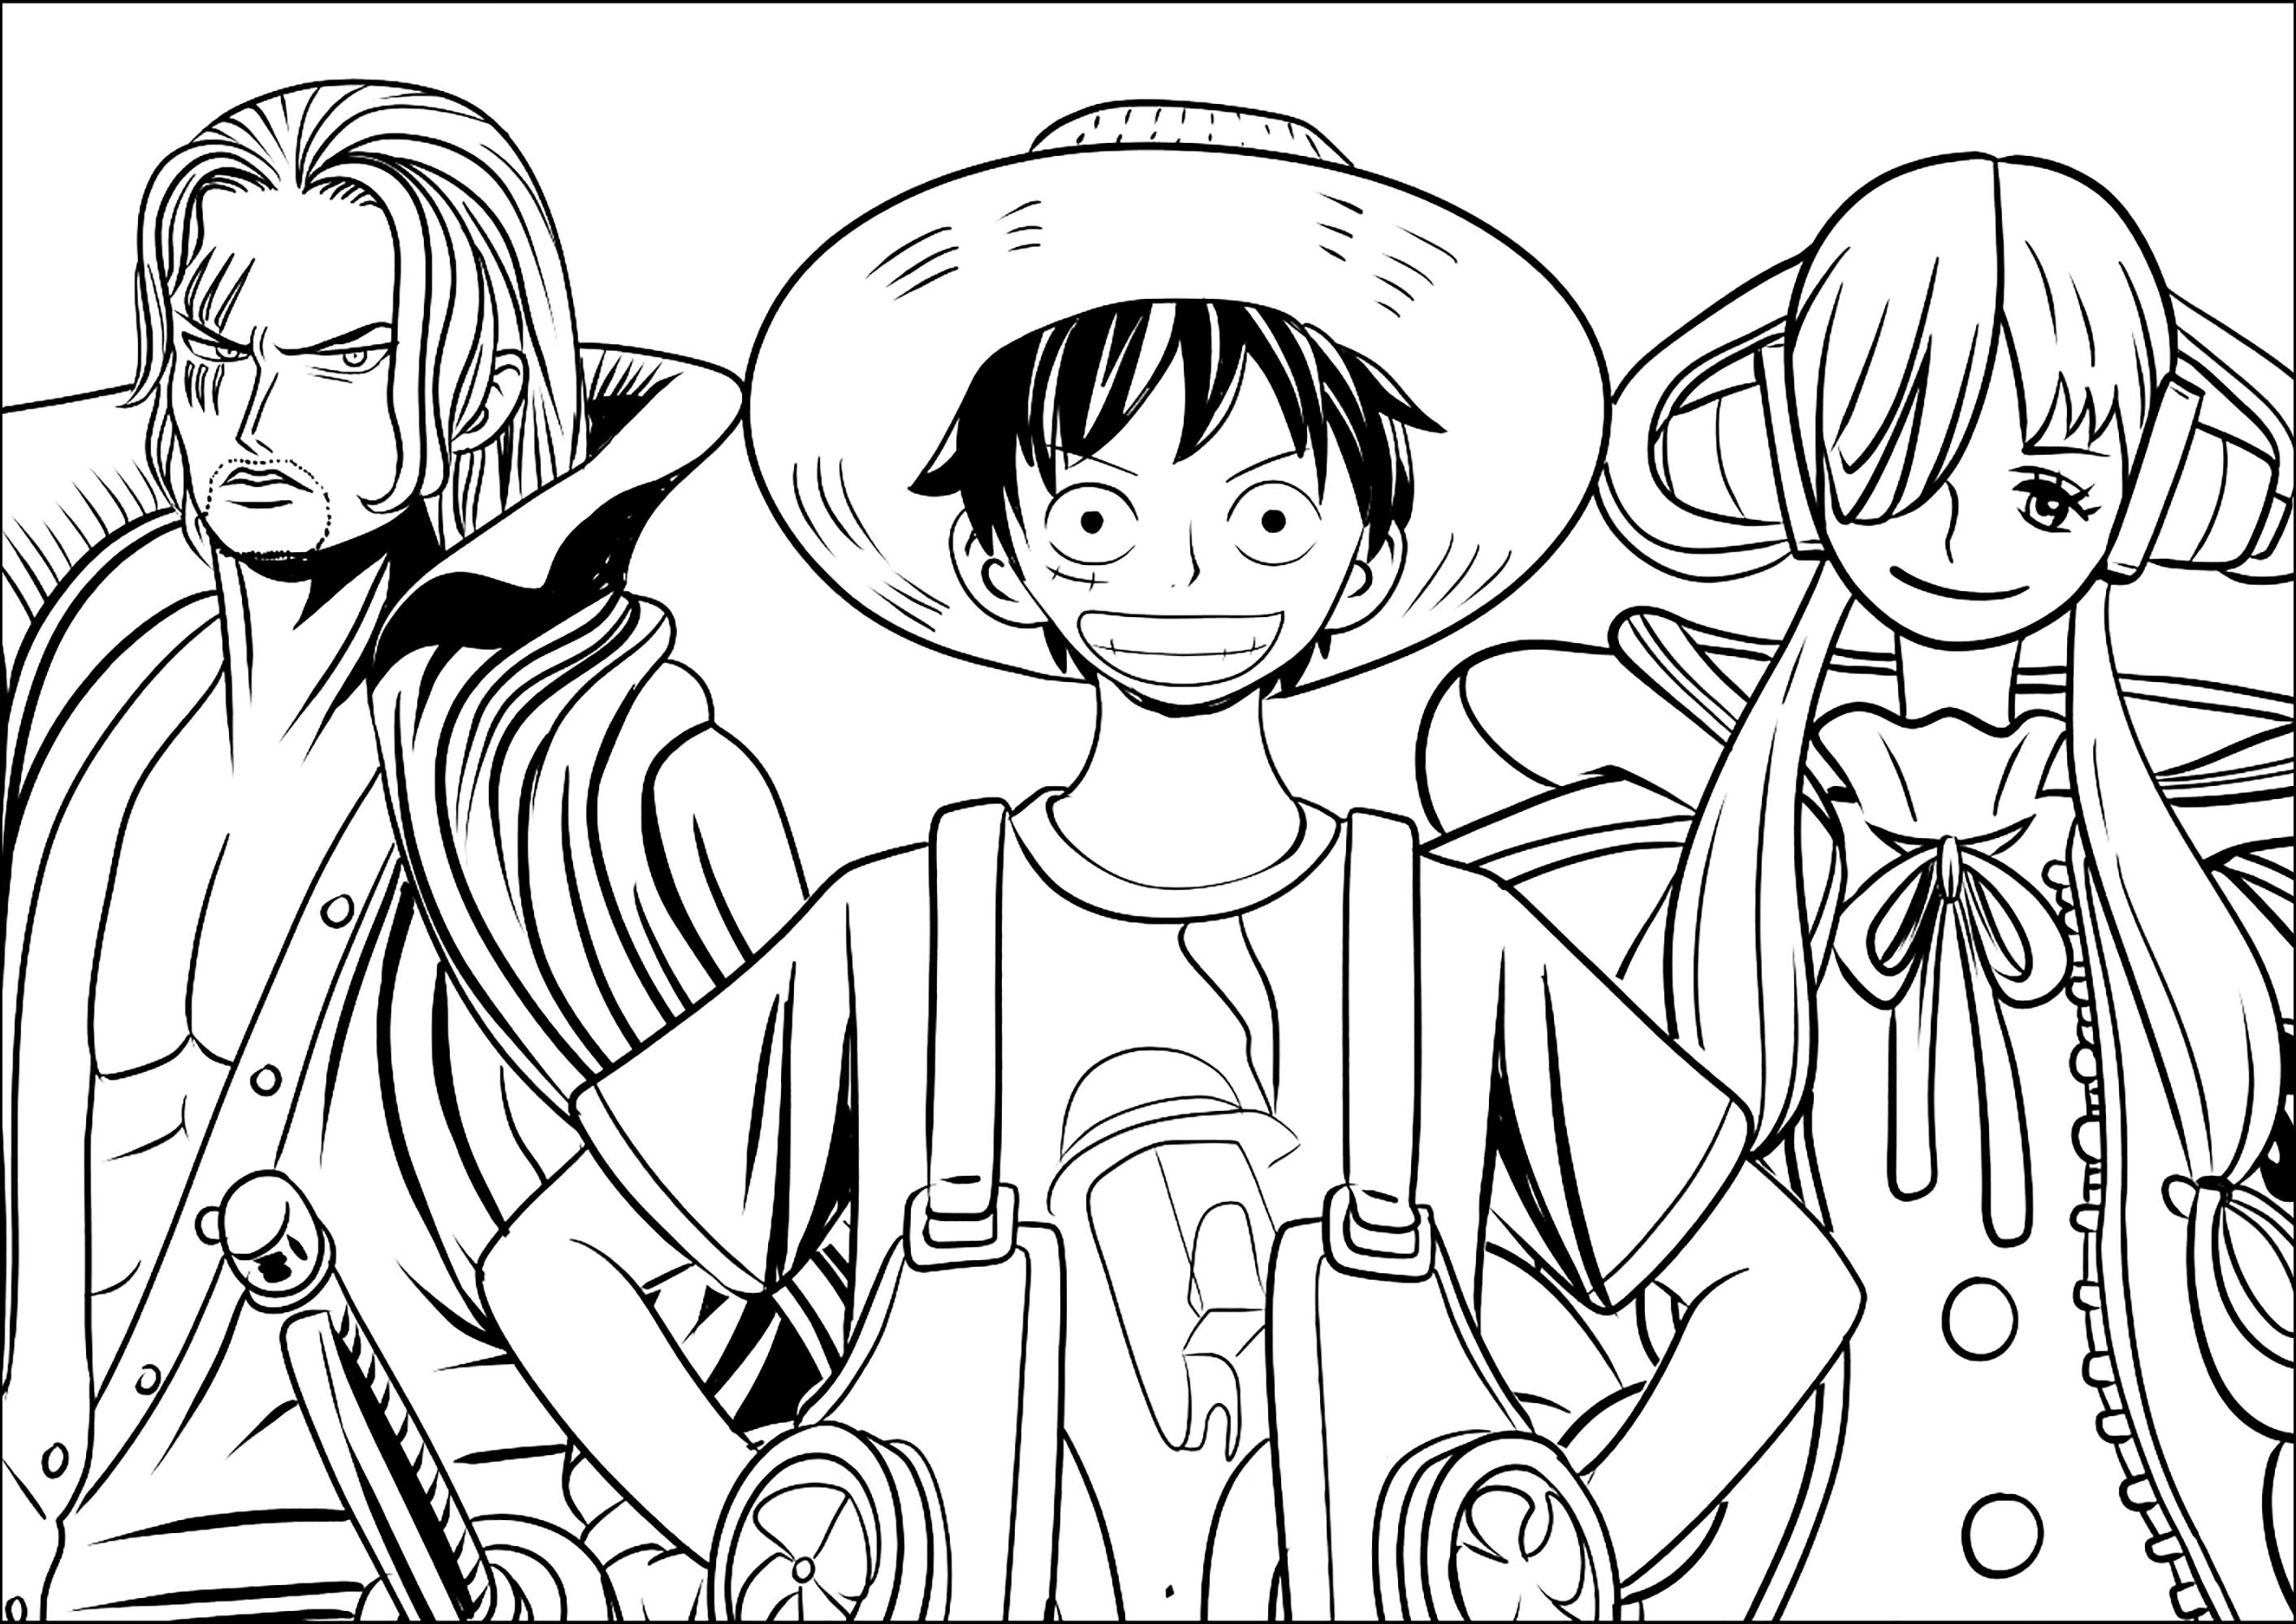 Principaux Personnages de One Piece. Monkey D. Luffy, Roronoa Zoro, et Nami